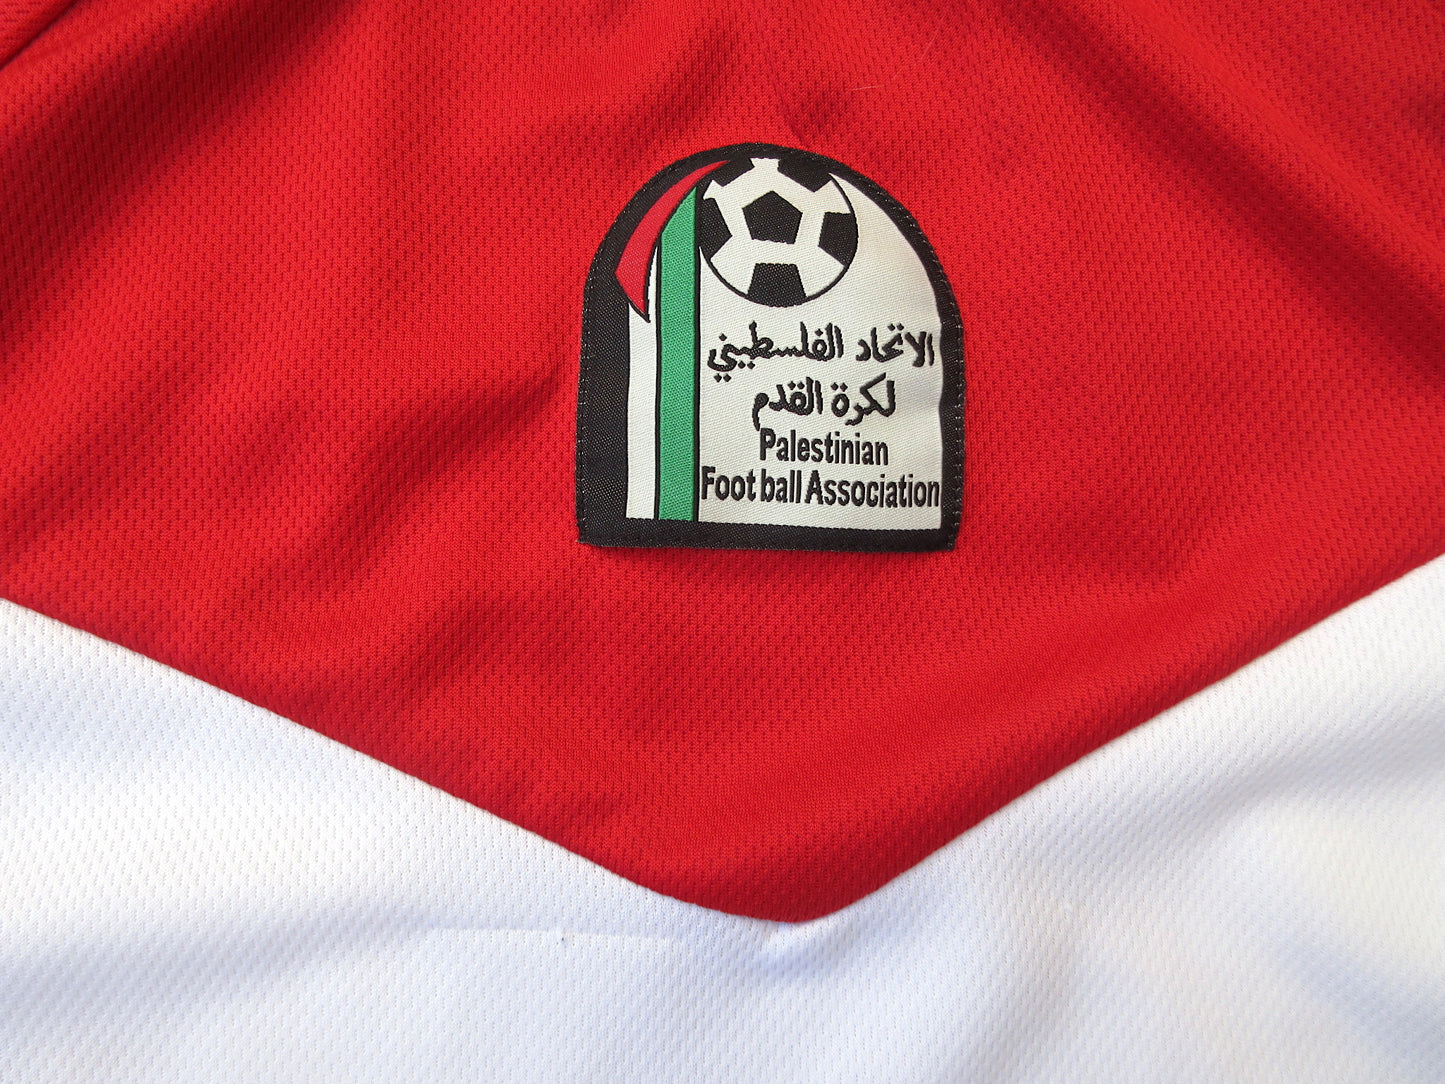 PALESTINA, football shirt.